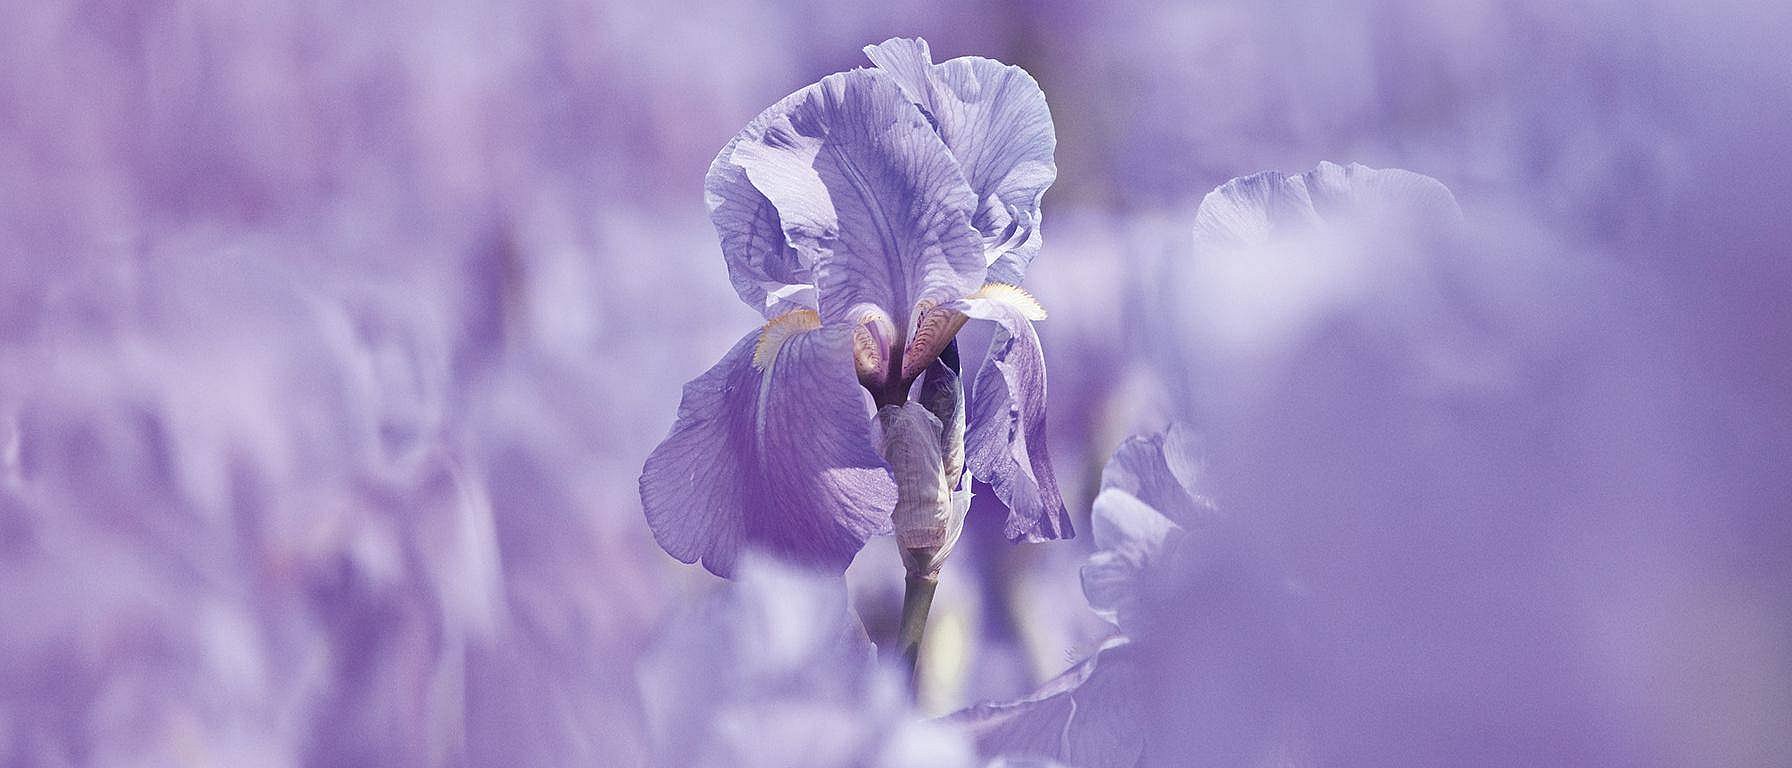 Irisblüte von nahem